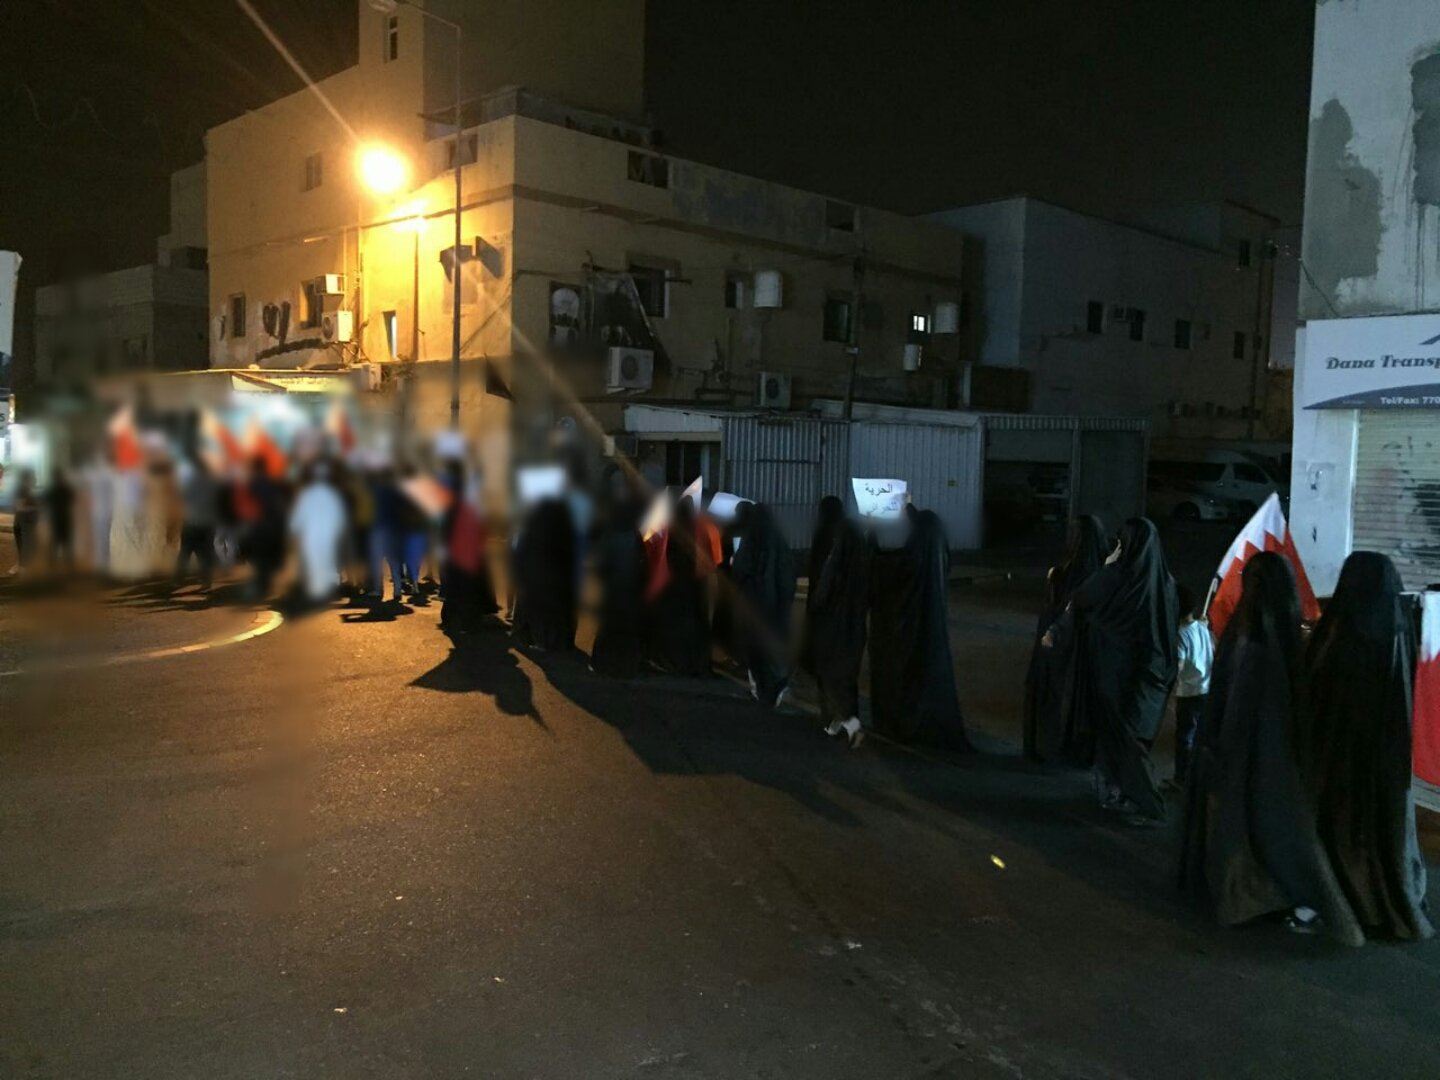 تظاهرات غاضبة تشهدها البحرين تضامنًا مع الأسرى وانتصارًا لآية الله قاسم